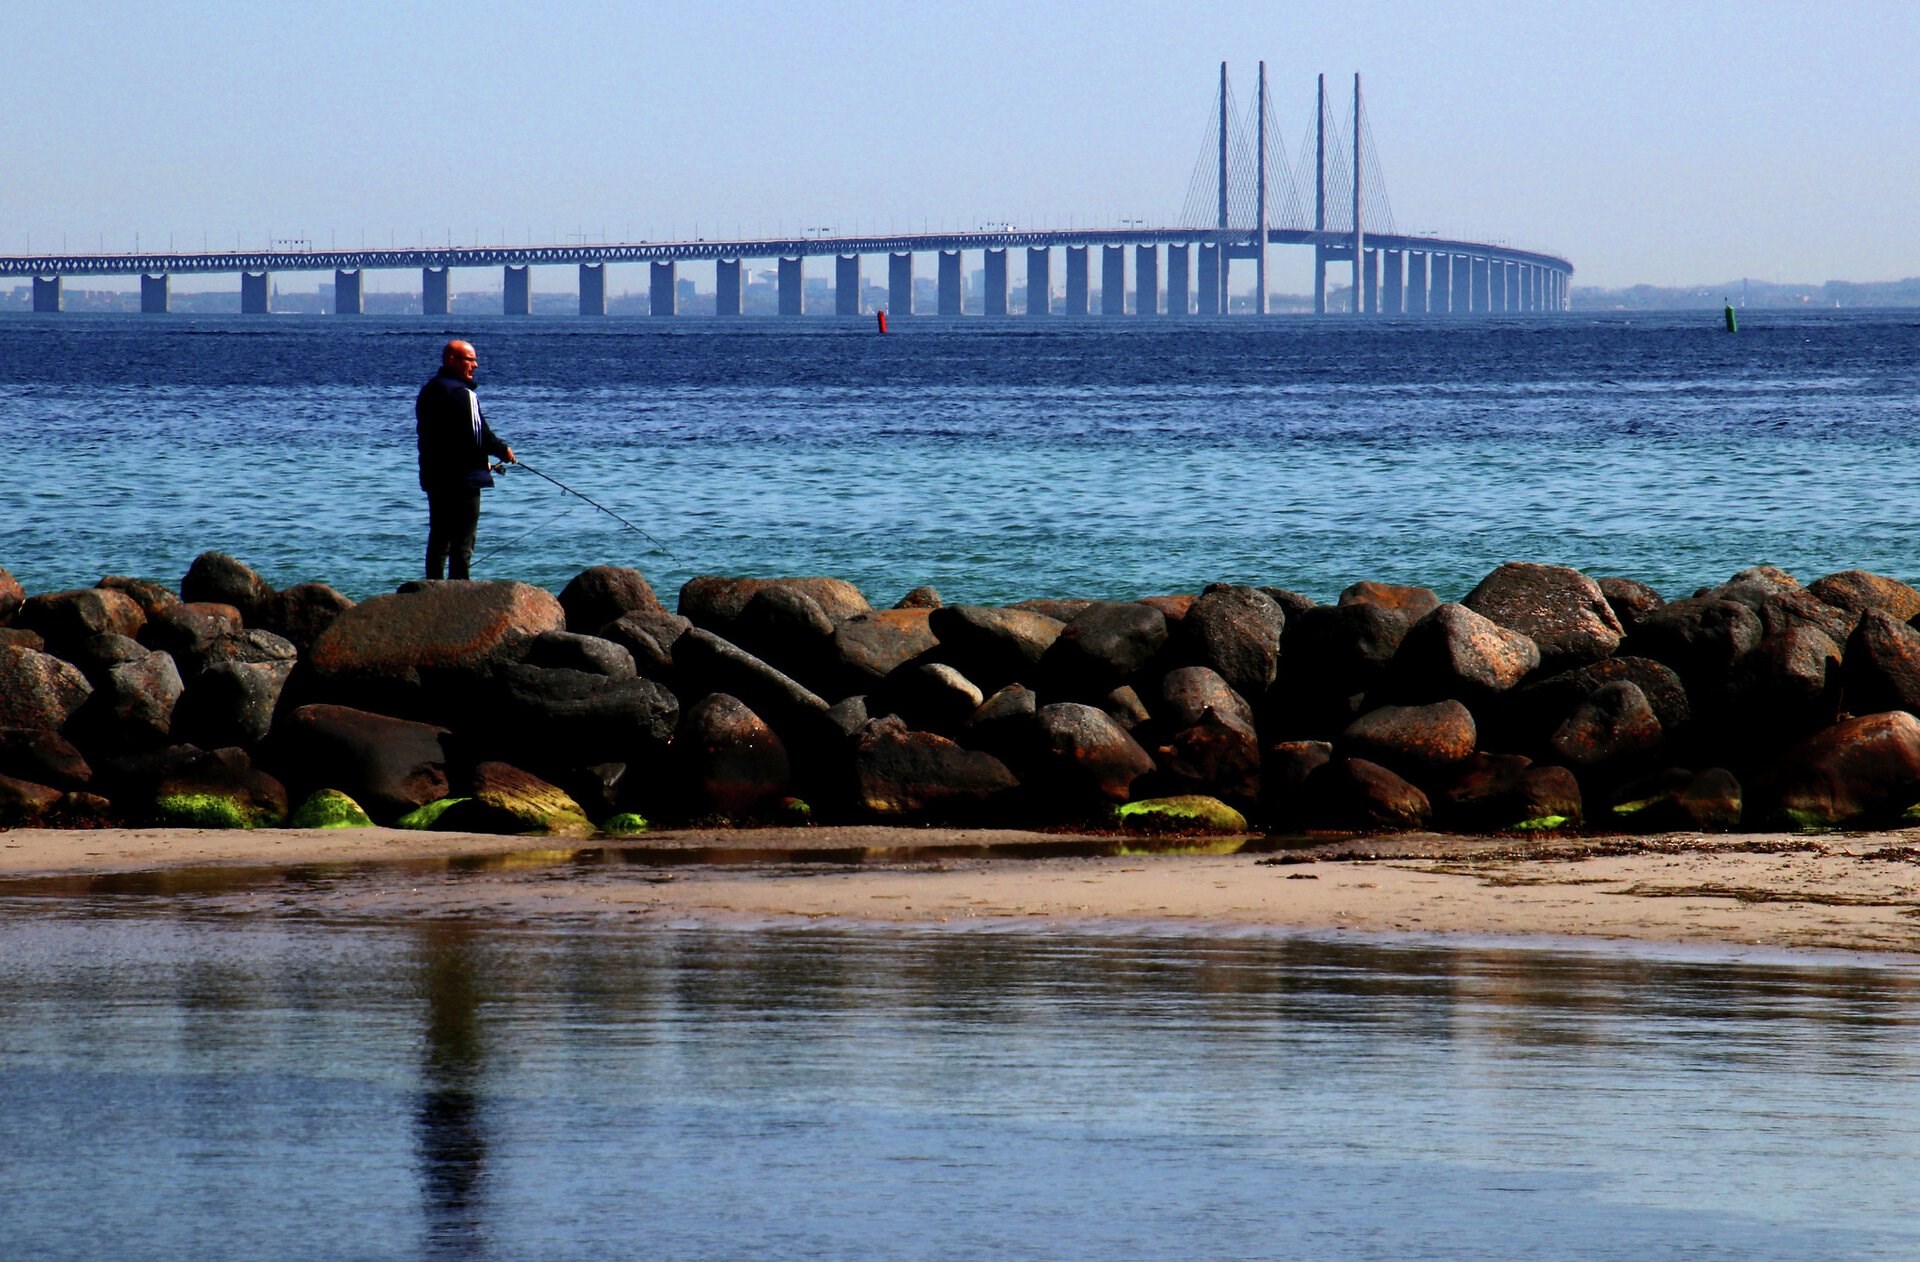 Godt nyt for Østersøen: Minister skærper miljøkrav efter kritik